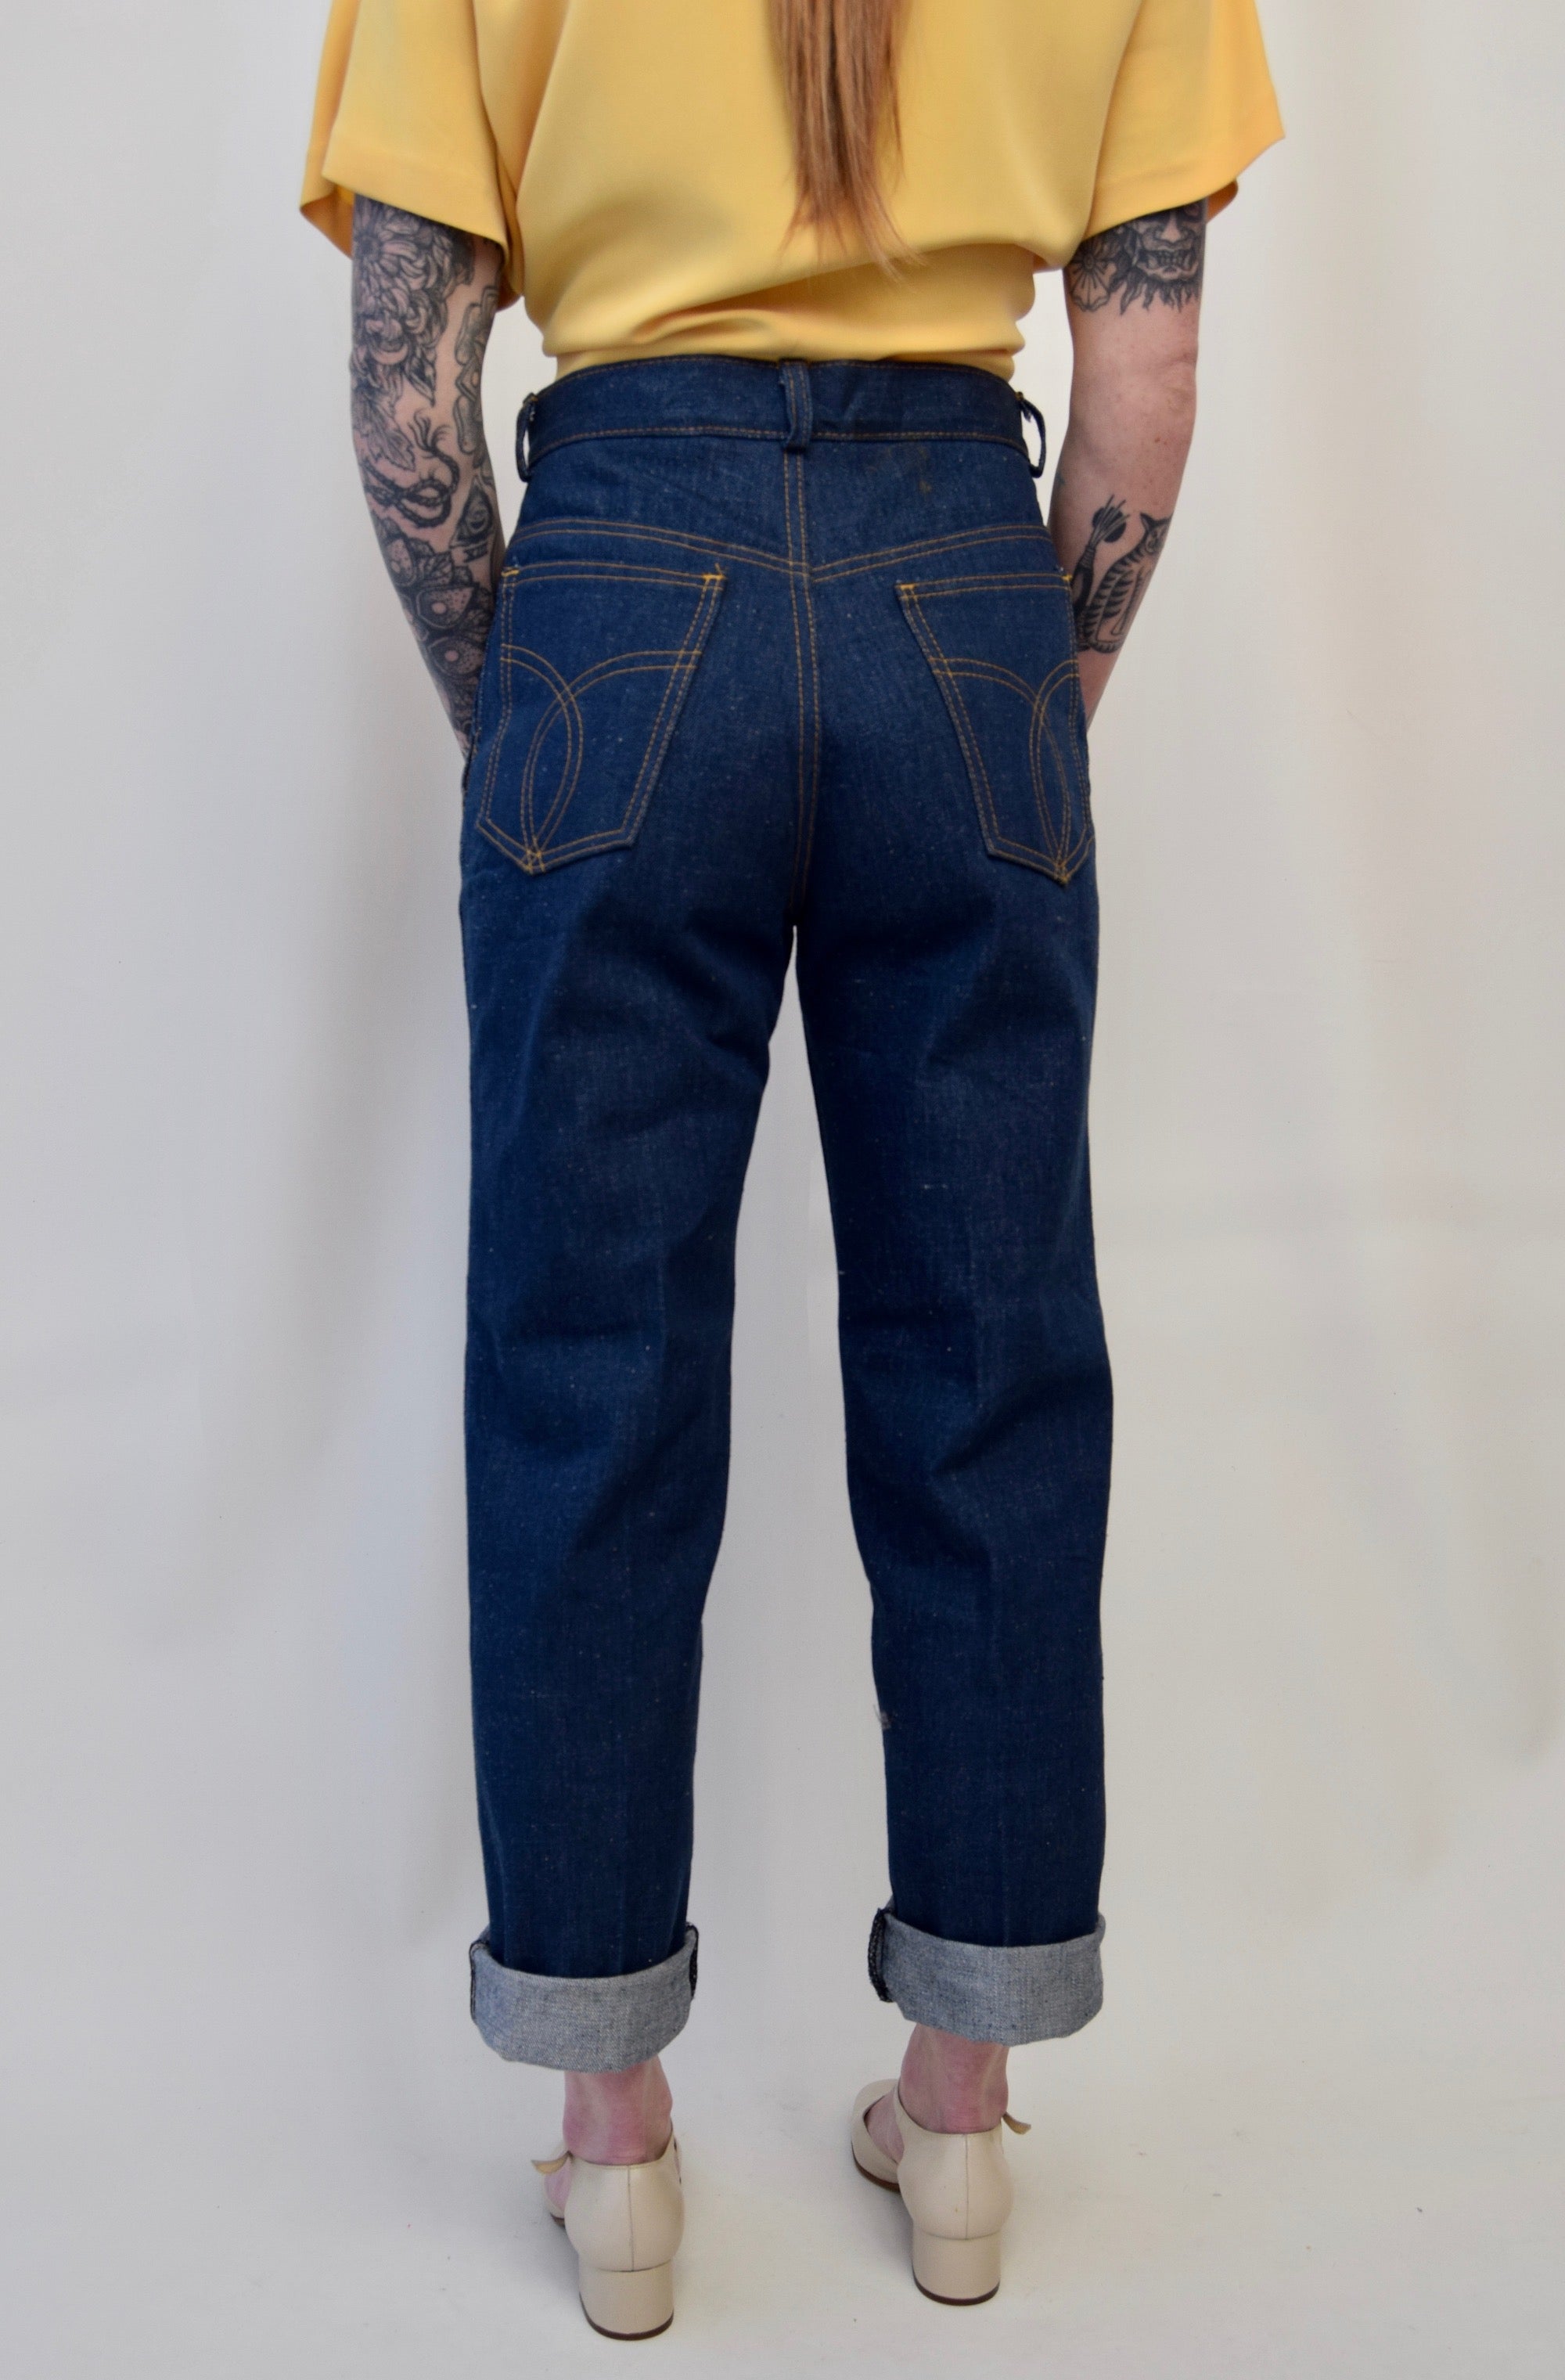 Vintage Levis Dark Wash Raw Denim Jeans